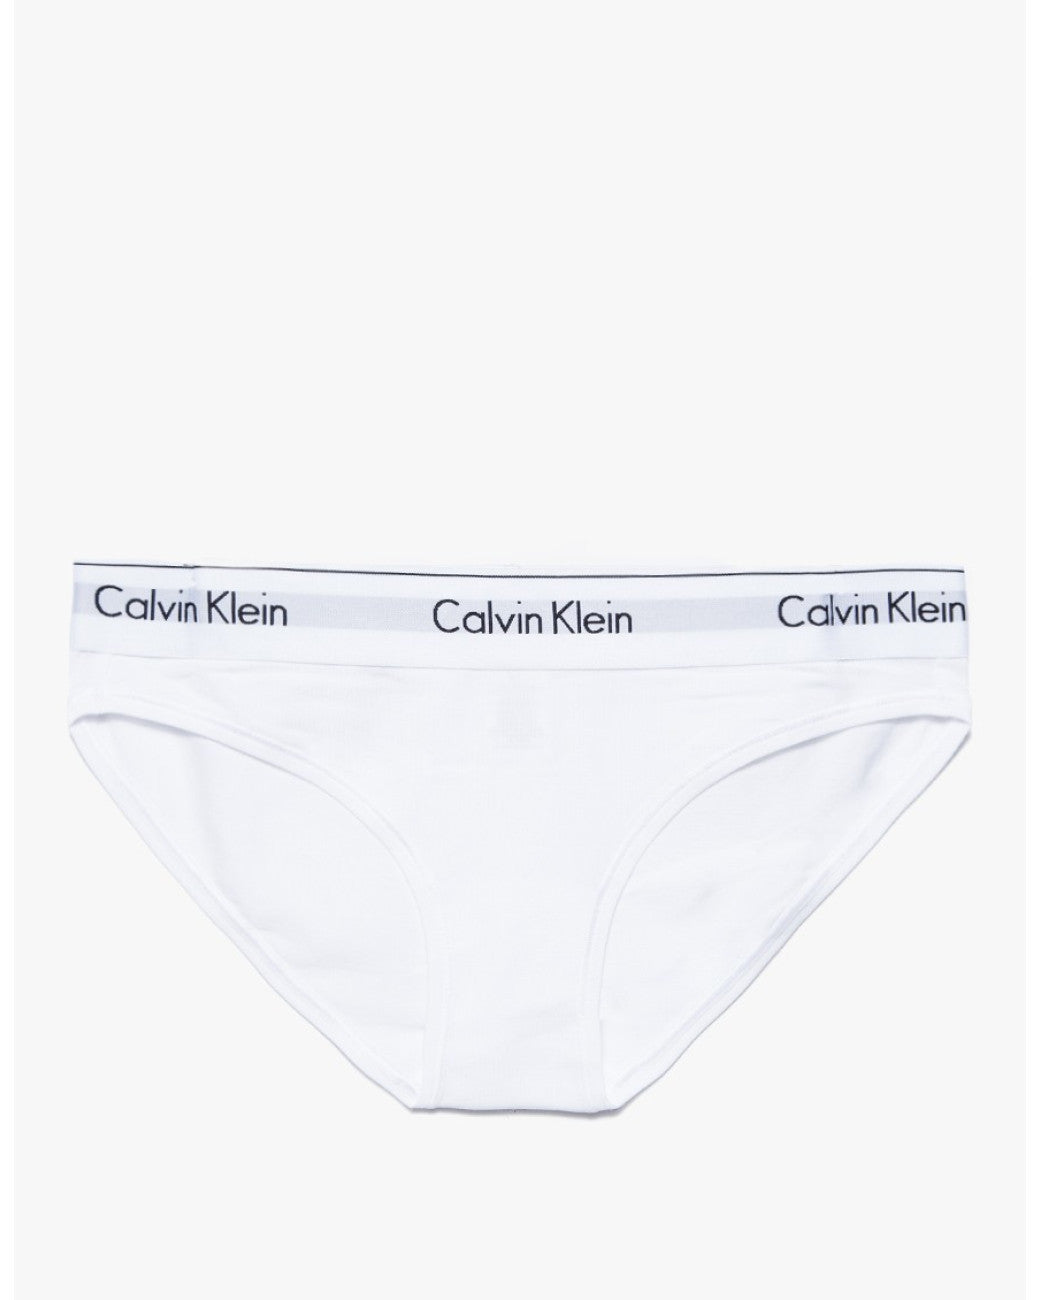 Calvin Klein Underwear Women's Modern Cotton Bikini Briefs, Black, M at   Women's Clothing store